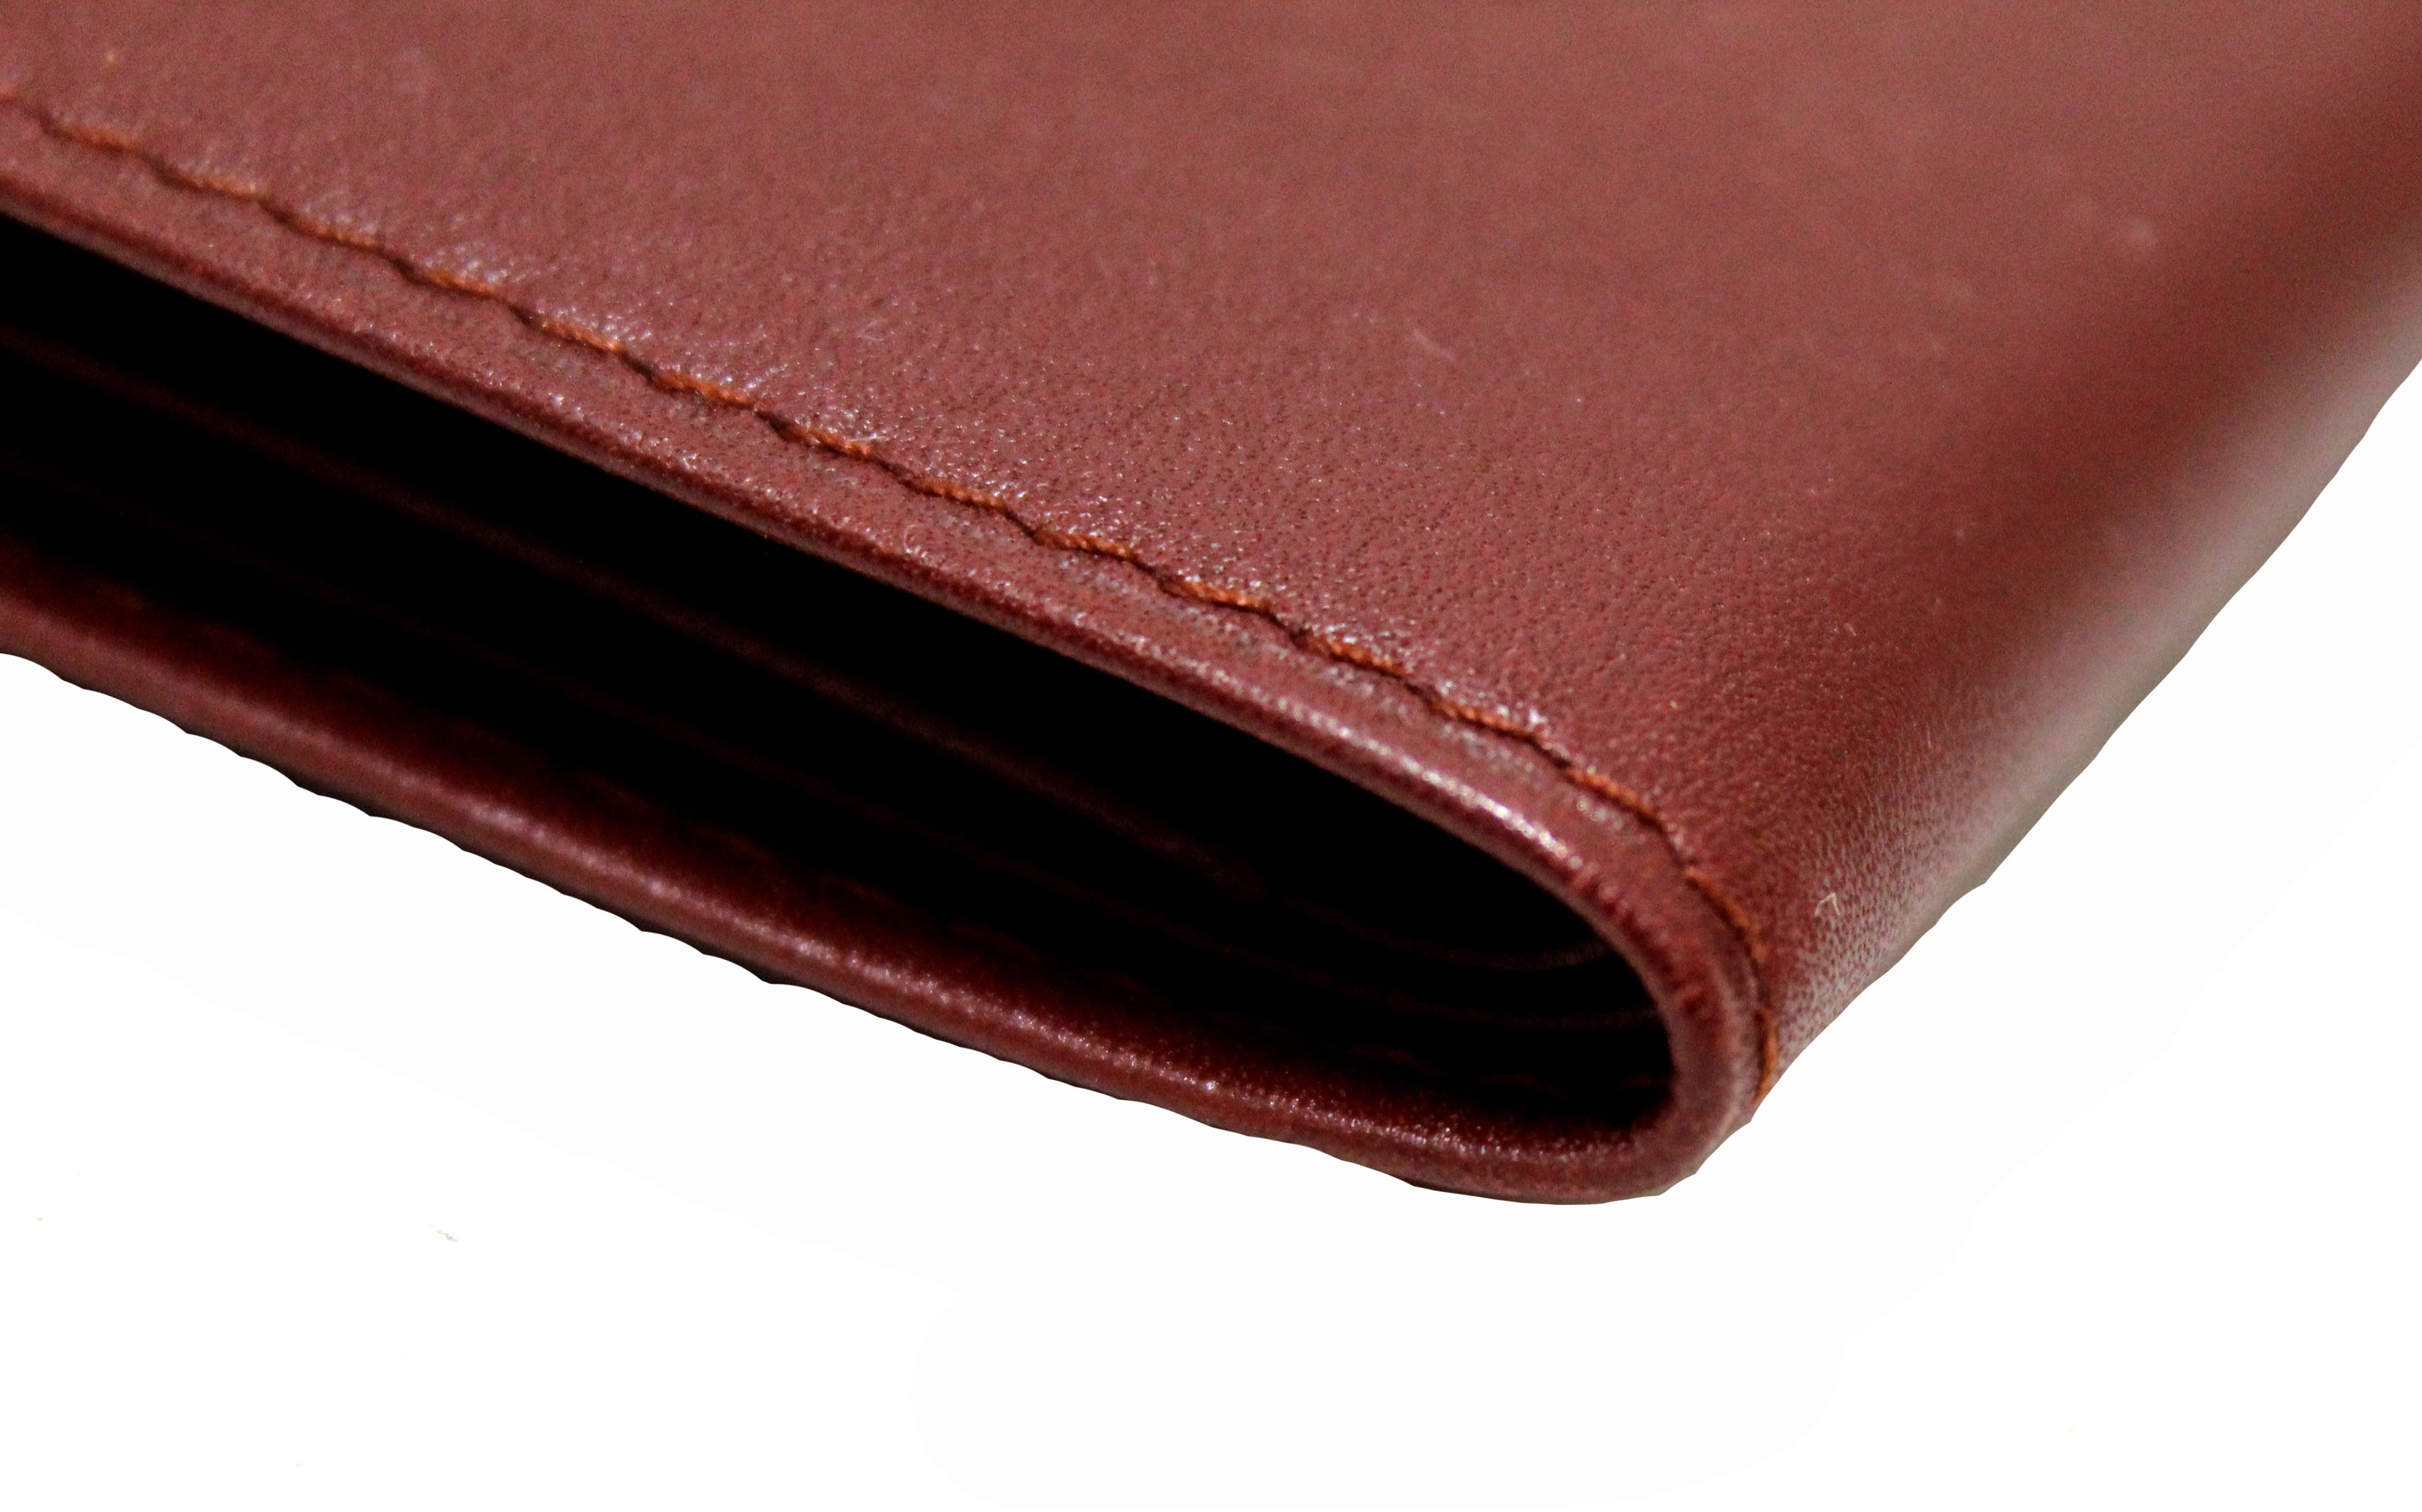 Panthère de Cartier Small Leather Goods, compact wallet